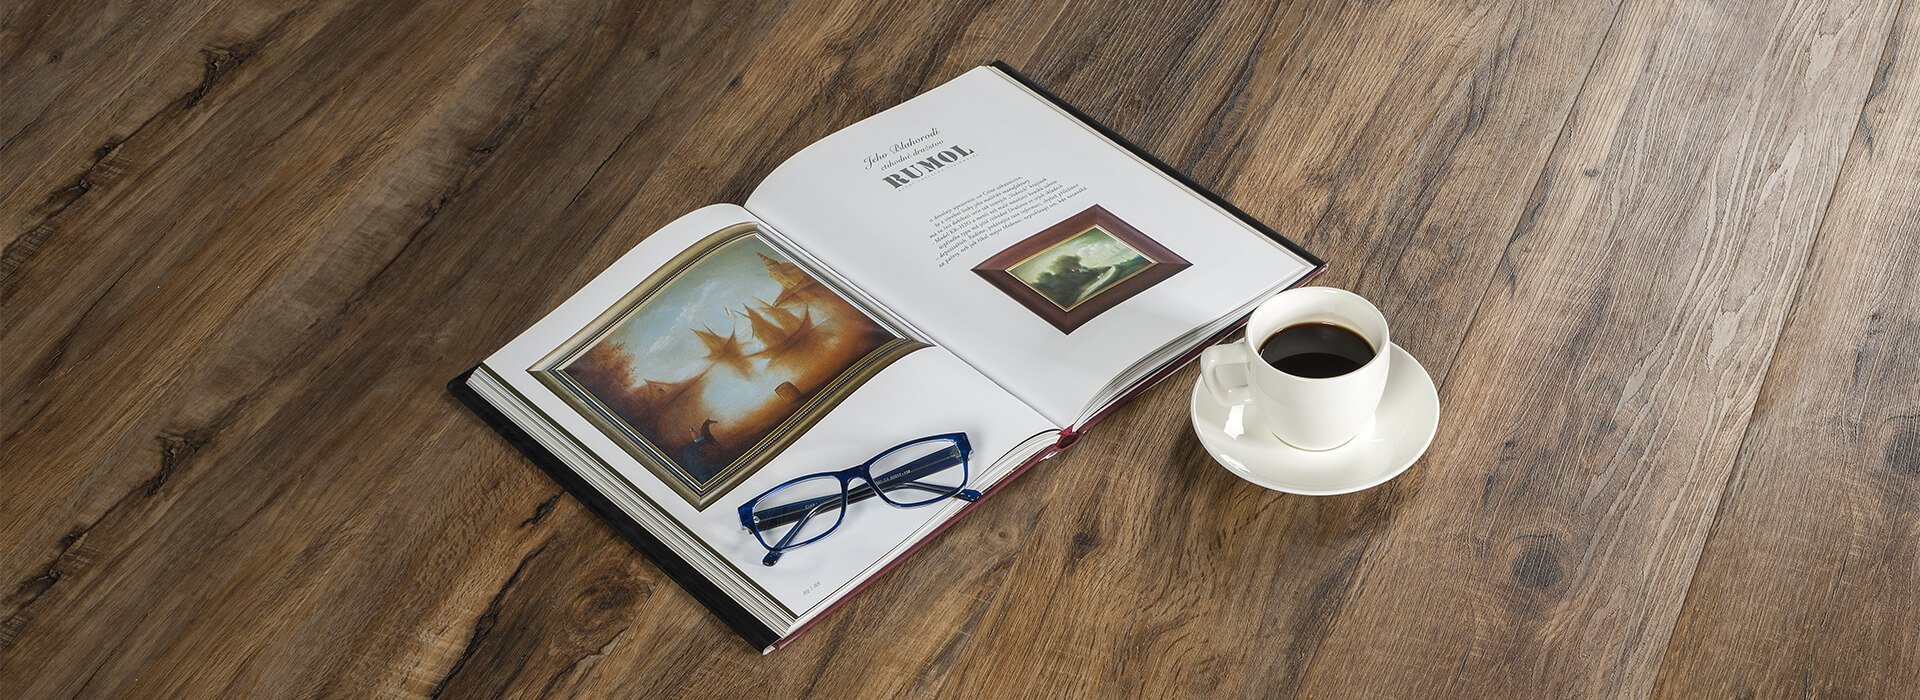 Kniha, káva a brýle ležící na podlaze